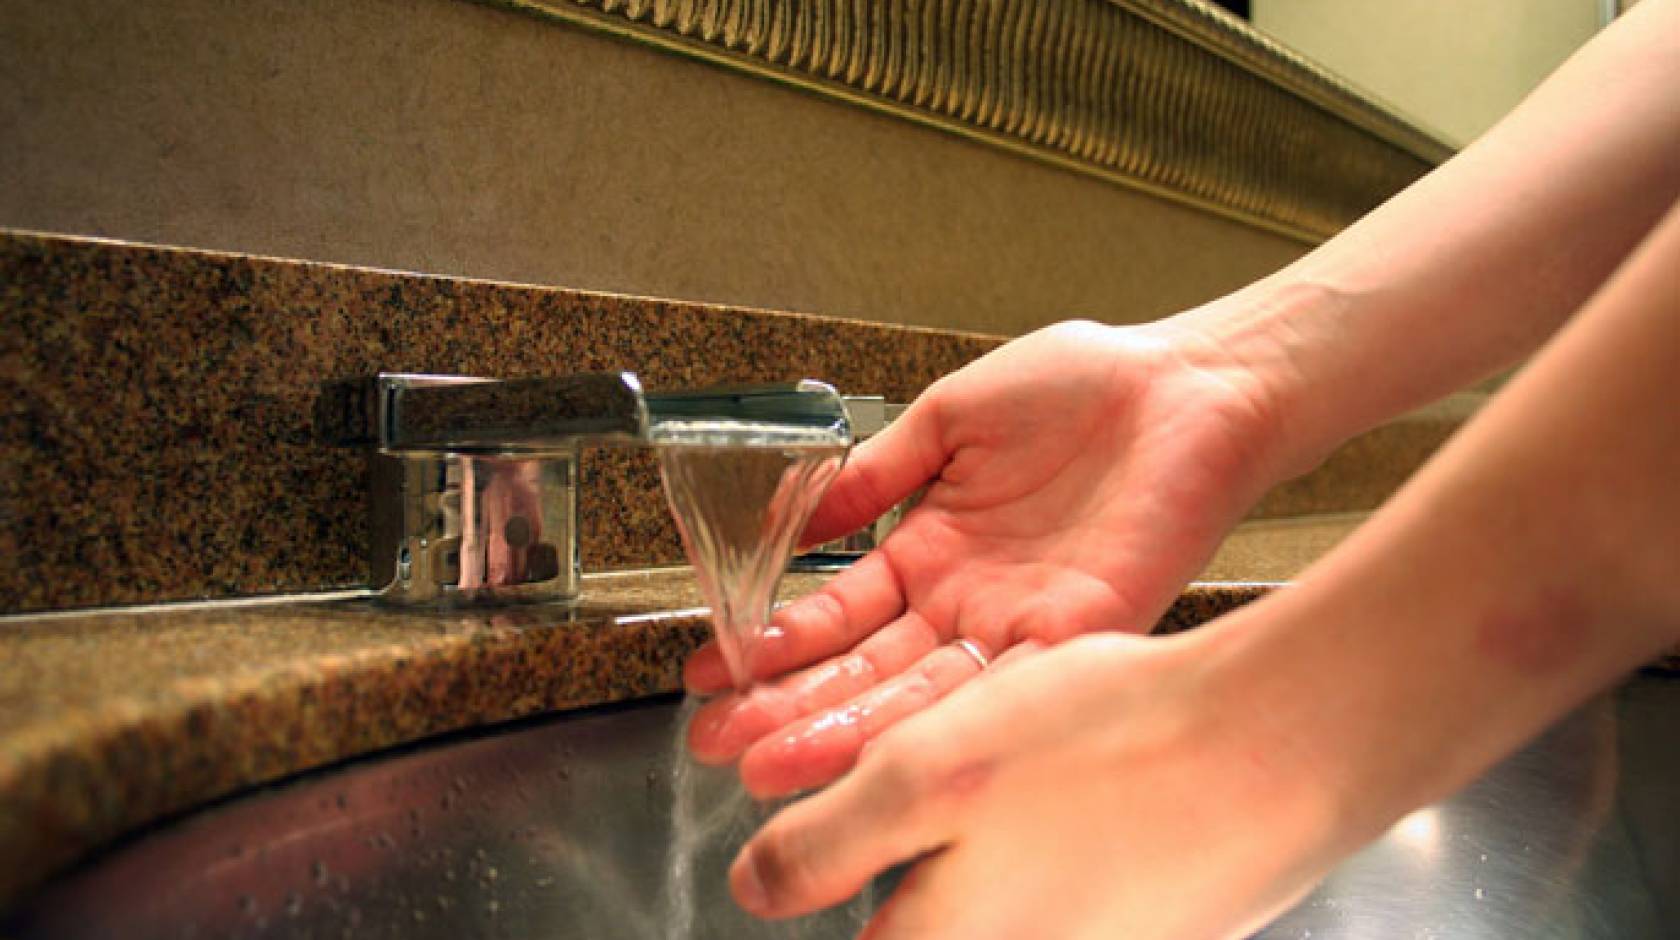 Hand washing OCD